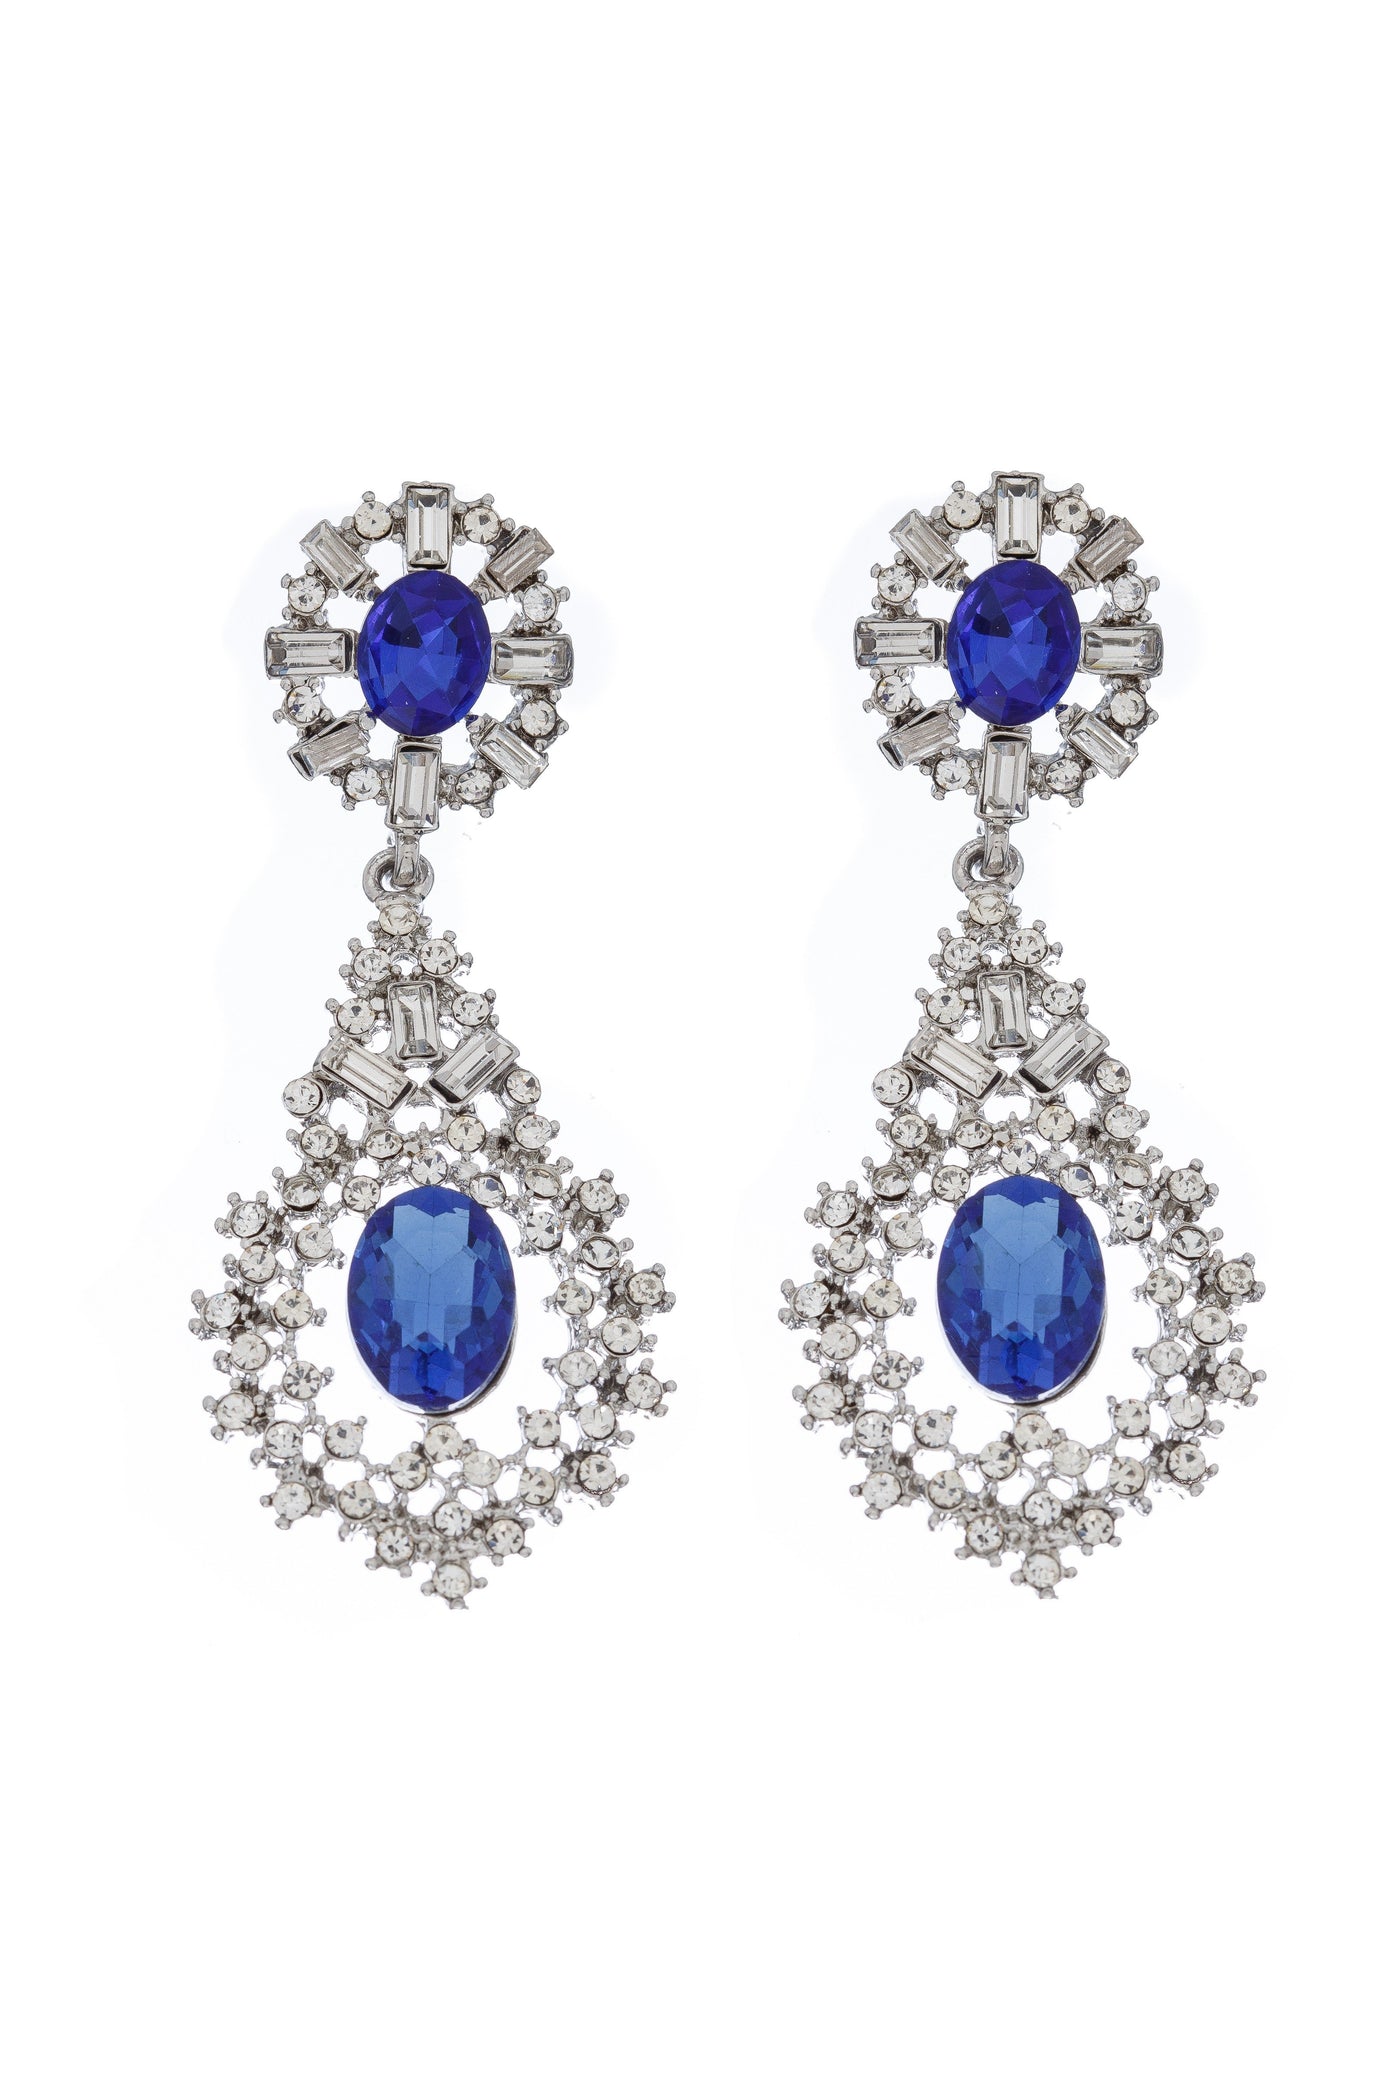 Edwardian Crystal Earrings in Blue